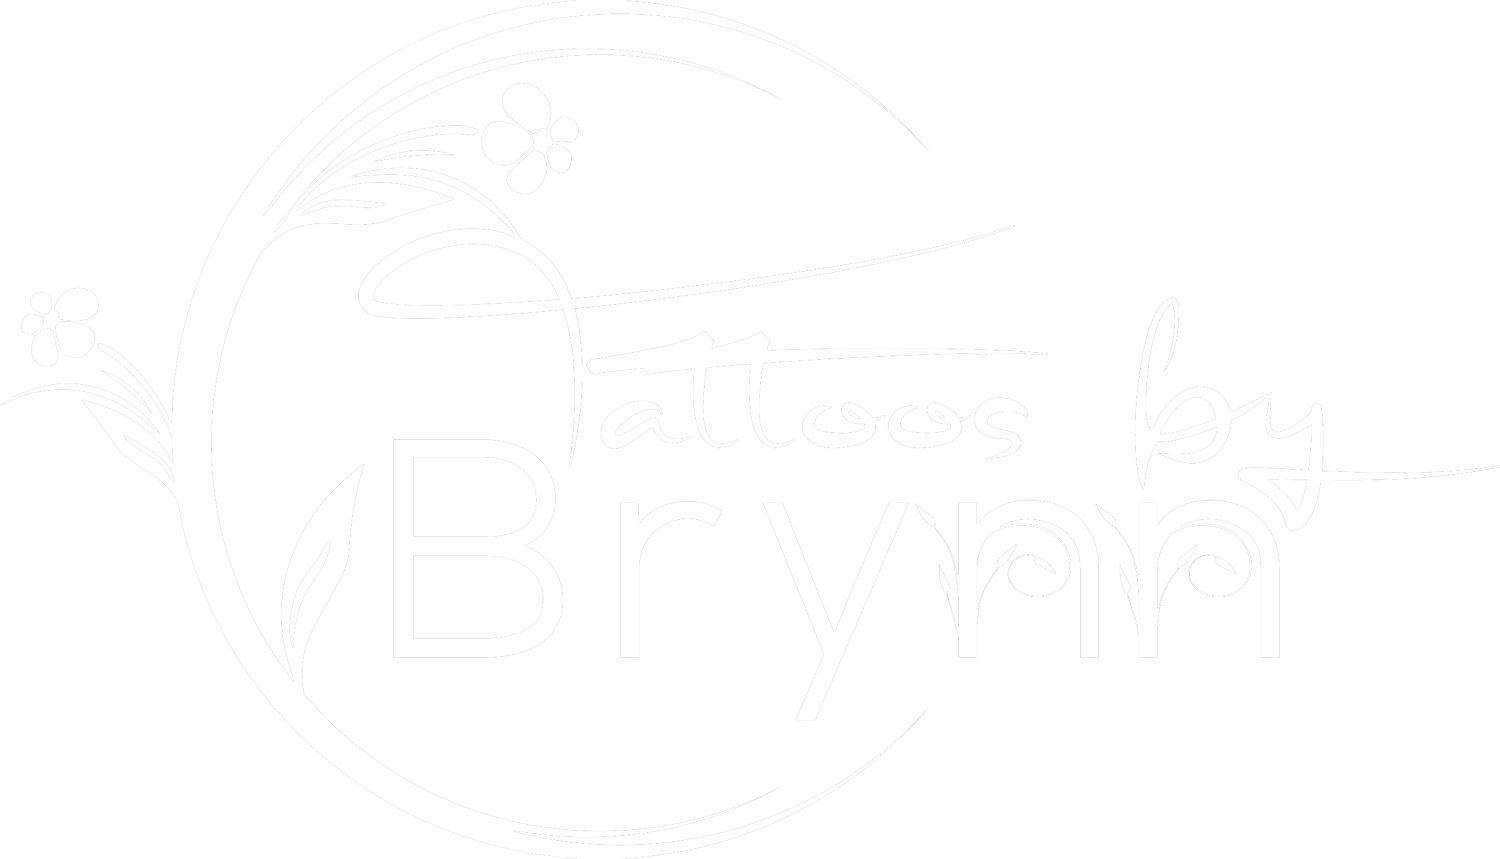 Tattoos by Brynn